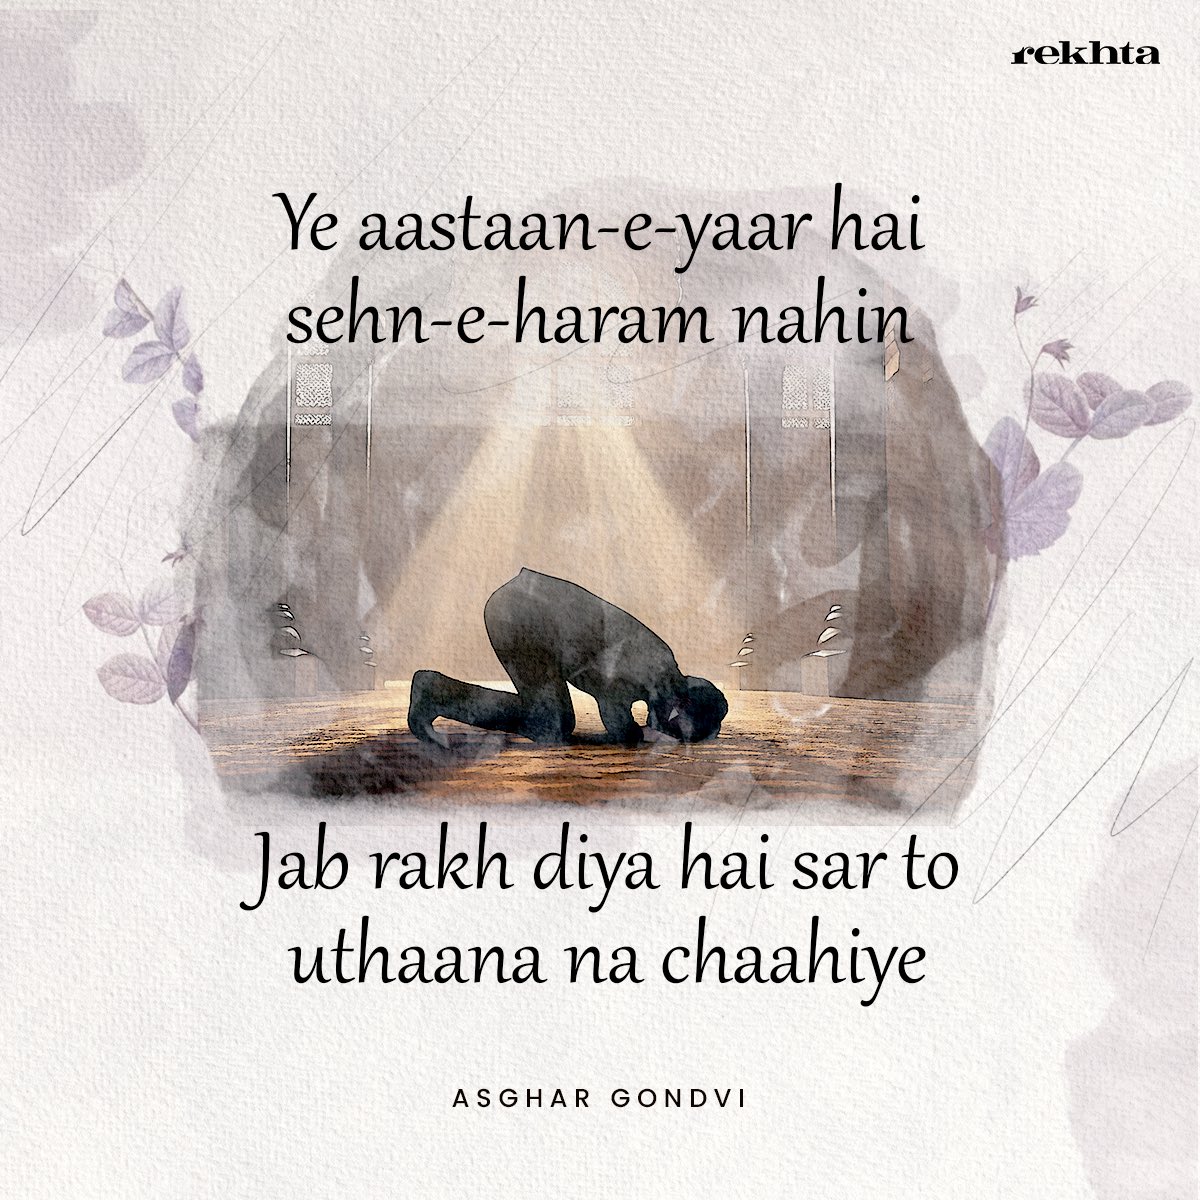 Remembering Asghar Gondvi on his death anniversary 

#asghargondvi #deathanniversary #rekhta #sufism #tasawwuf #urdu #urdupoetry #sufinama